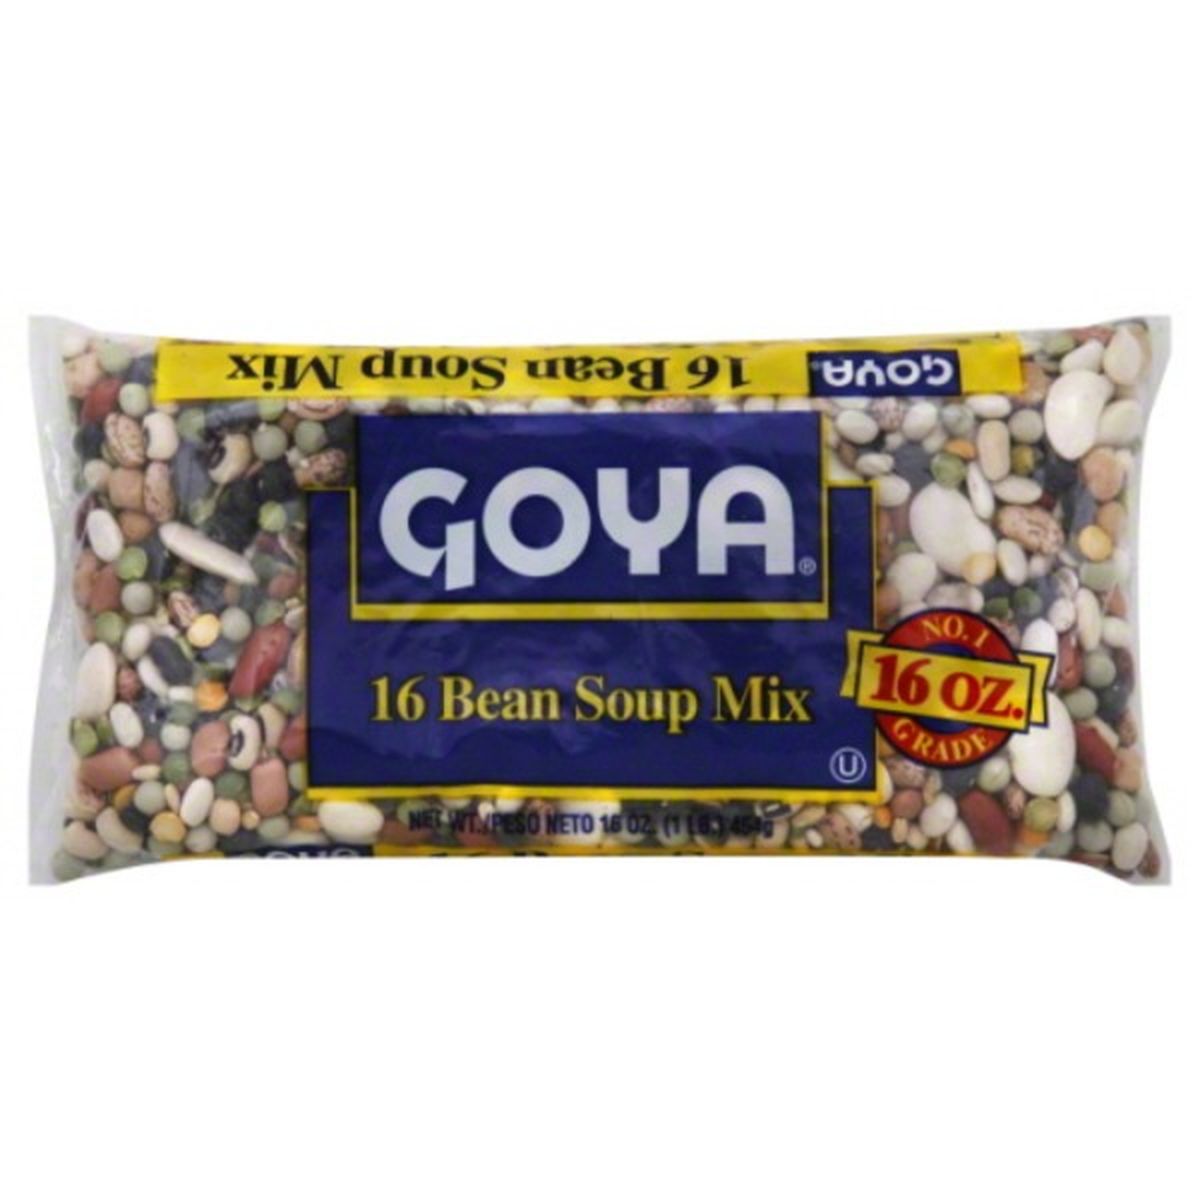 Calories in Goya Soup Mix, 16 Bean